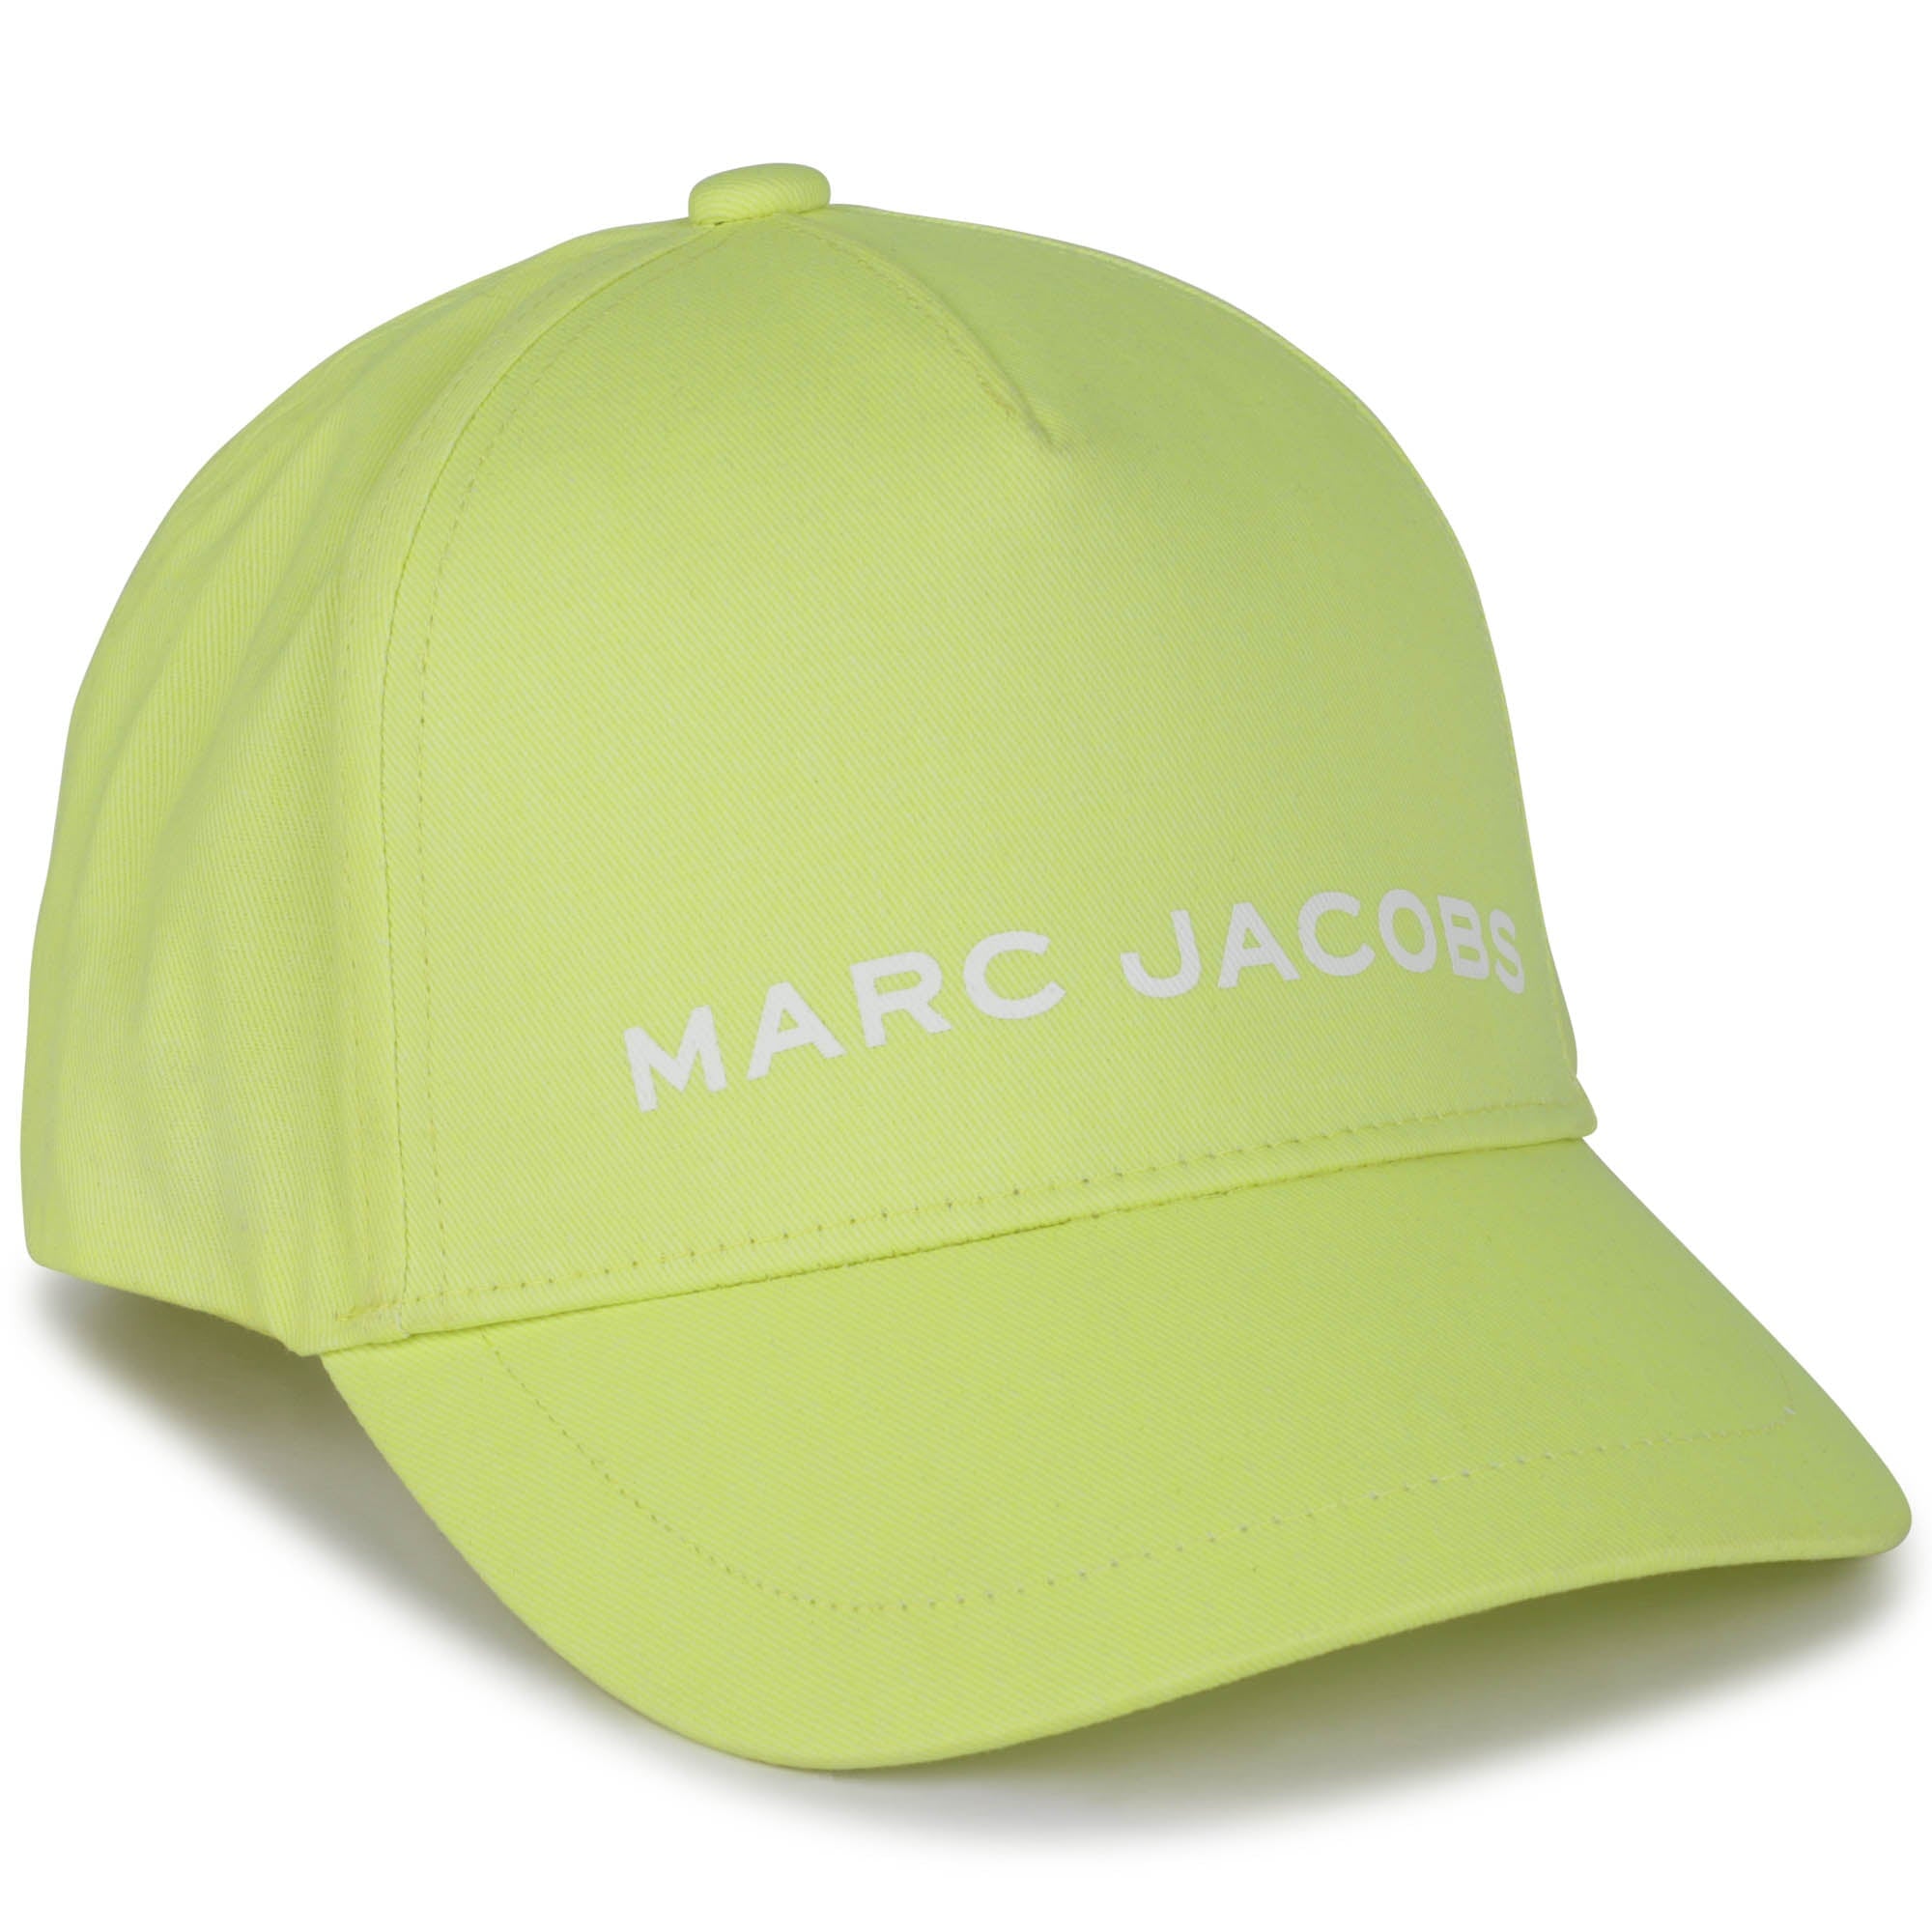 Marc Jacobs Cap - Ochre